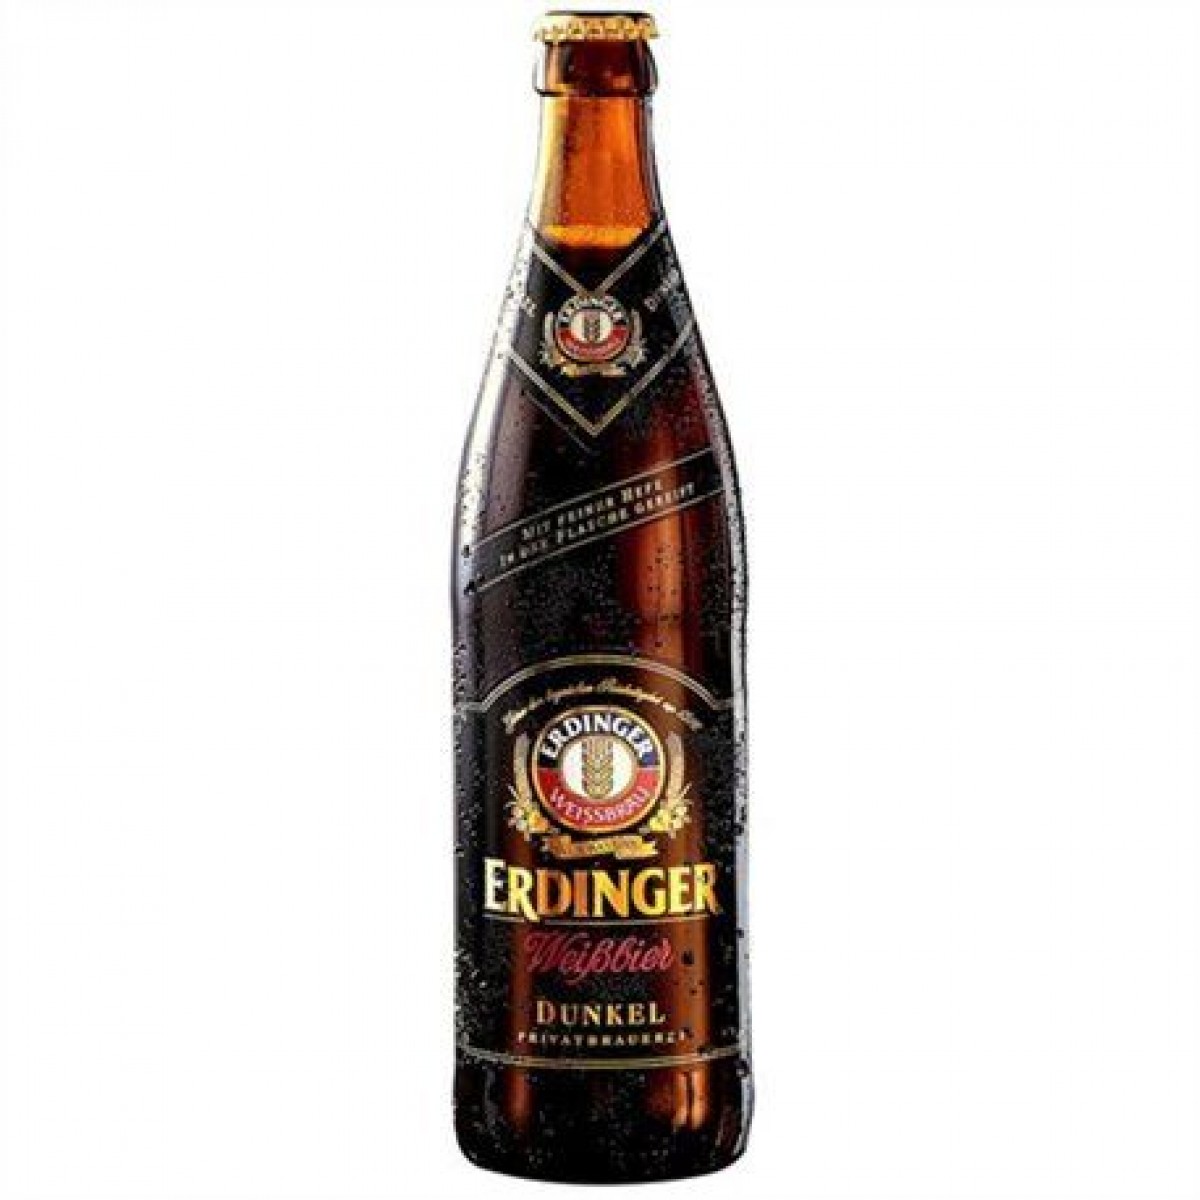 Bia Erdinger Weibbier Dunkel 5,3%-chai 500ml